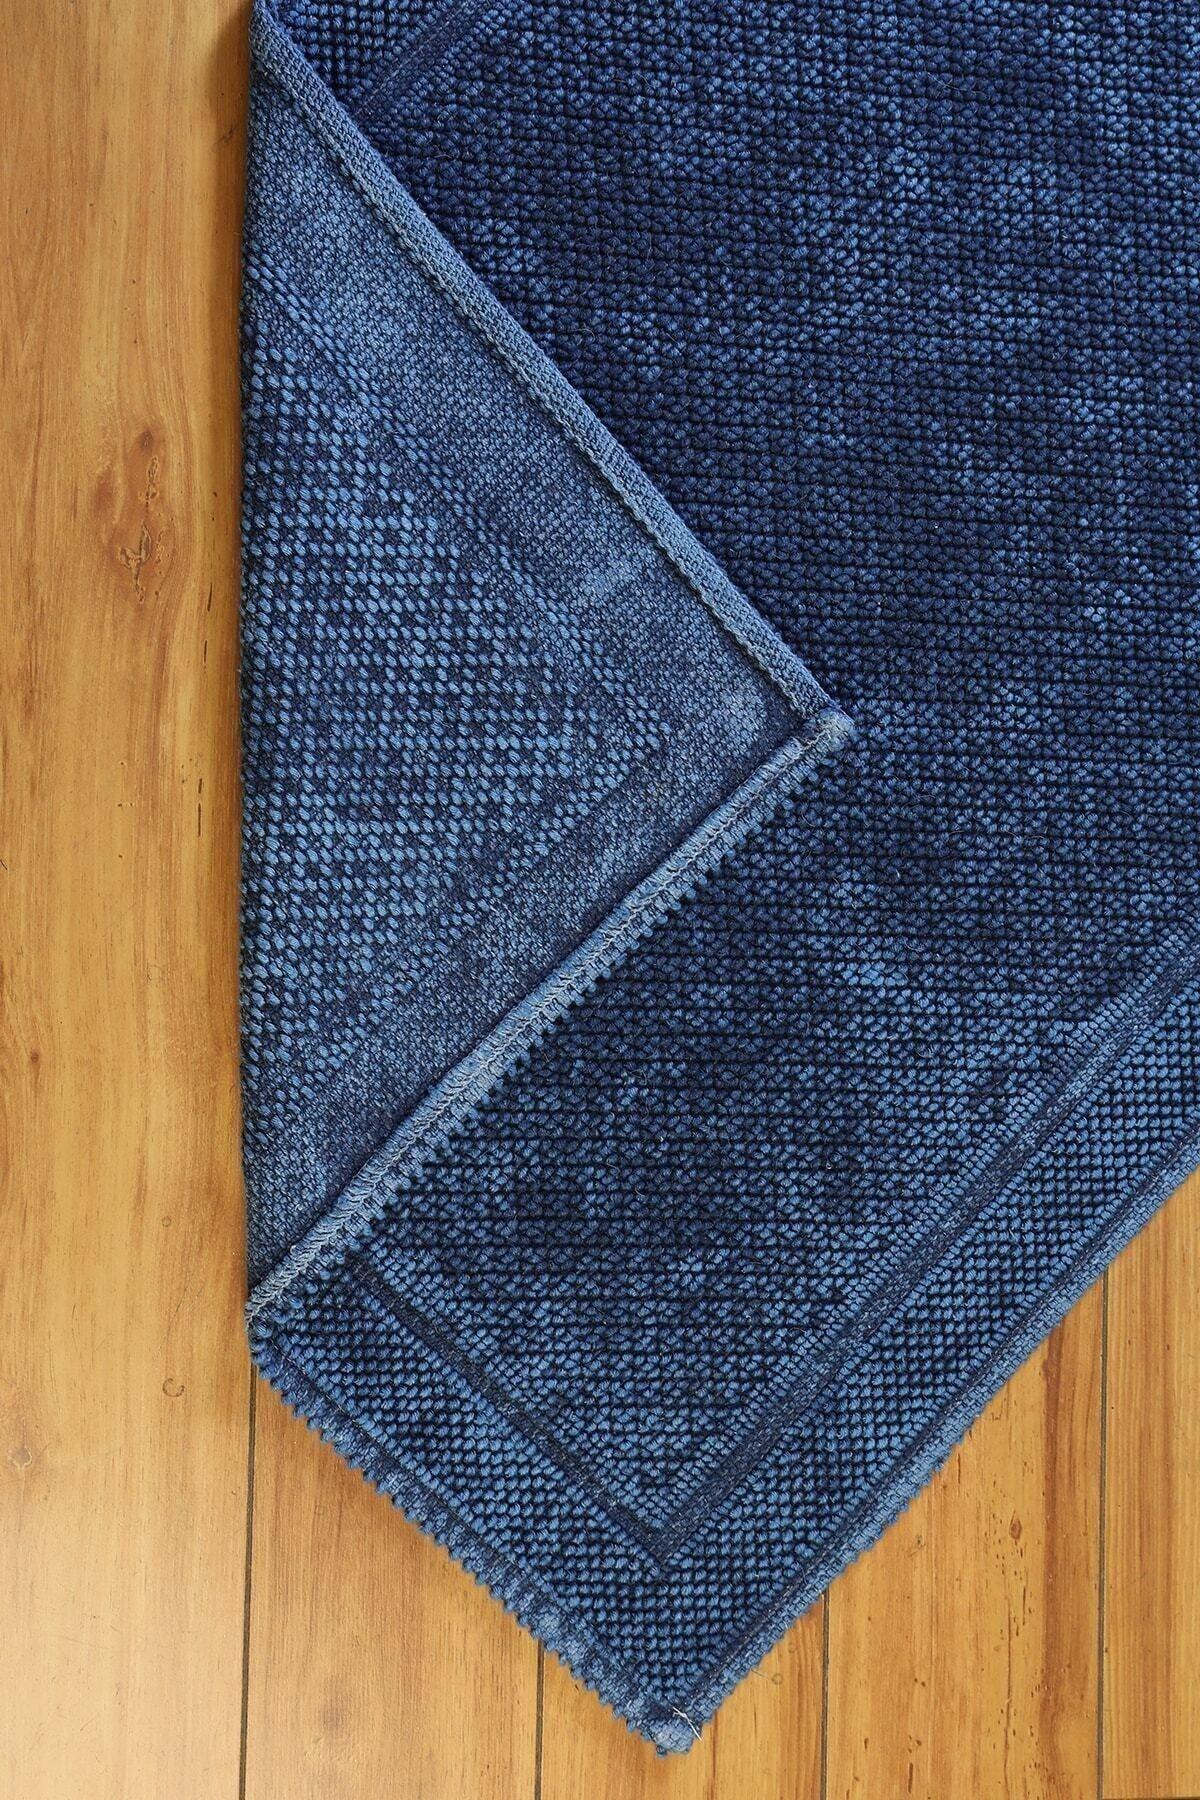 Alize Vintage Series Cotton Rug | Navy Blue - Swordslife